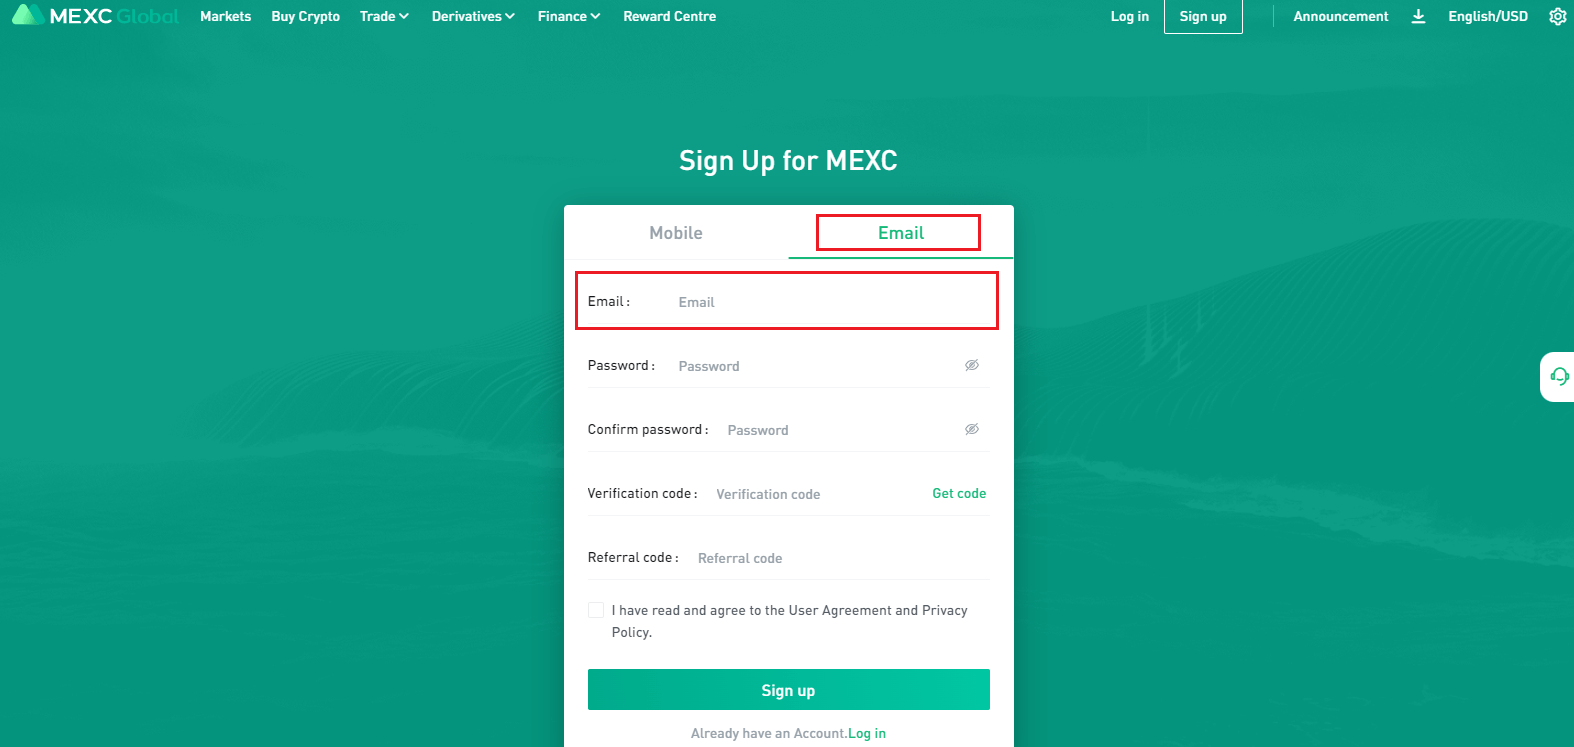 So registrieren Sie sich und melden sich bei MEXC an